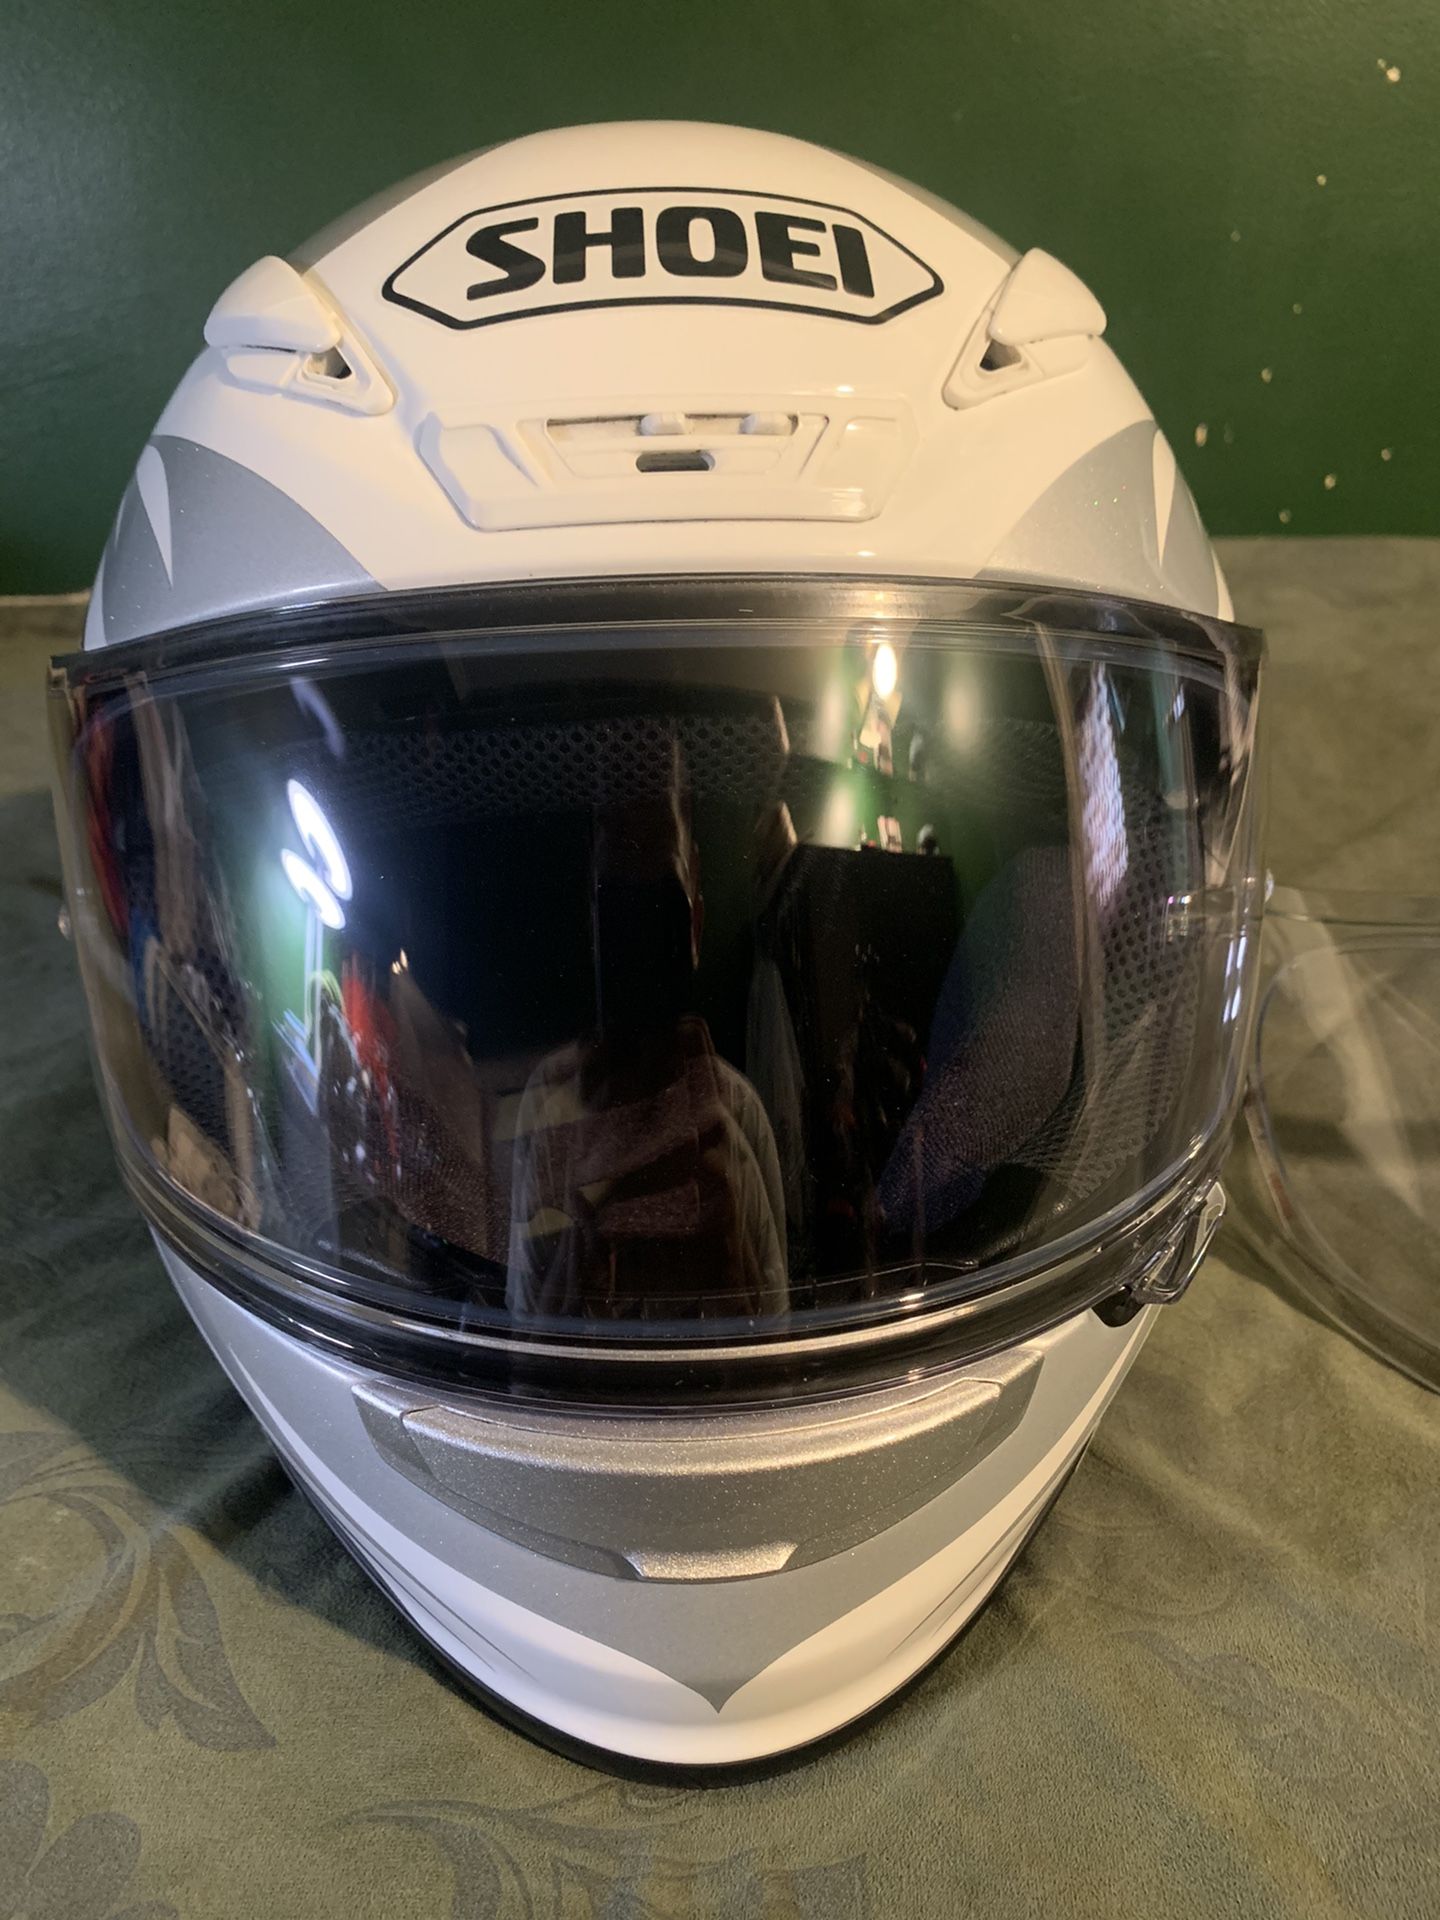 SHOEI RF-1200 Motorcycle Helmet